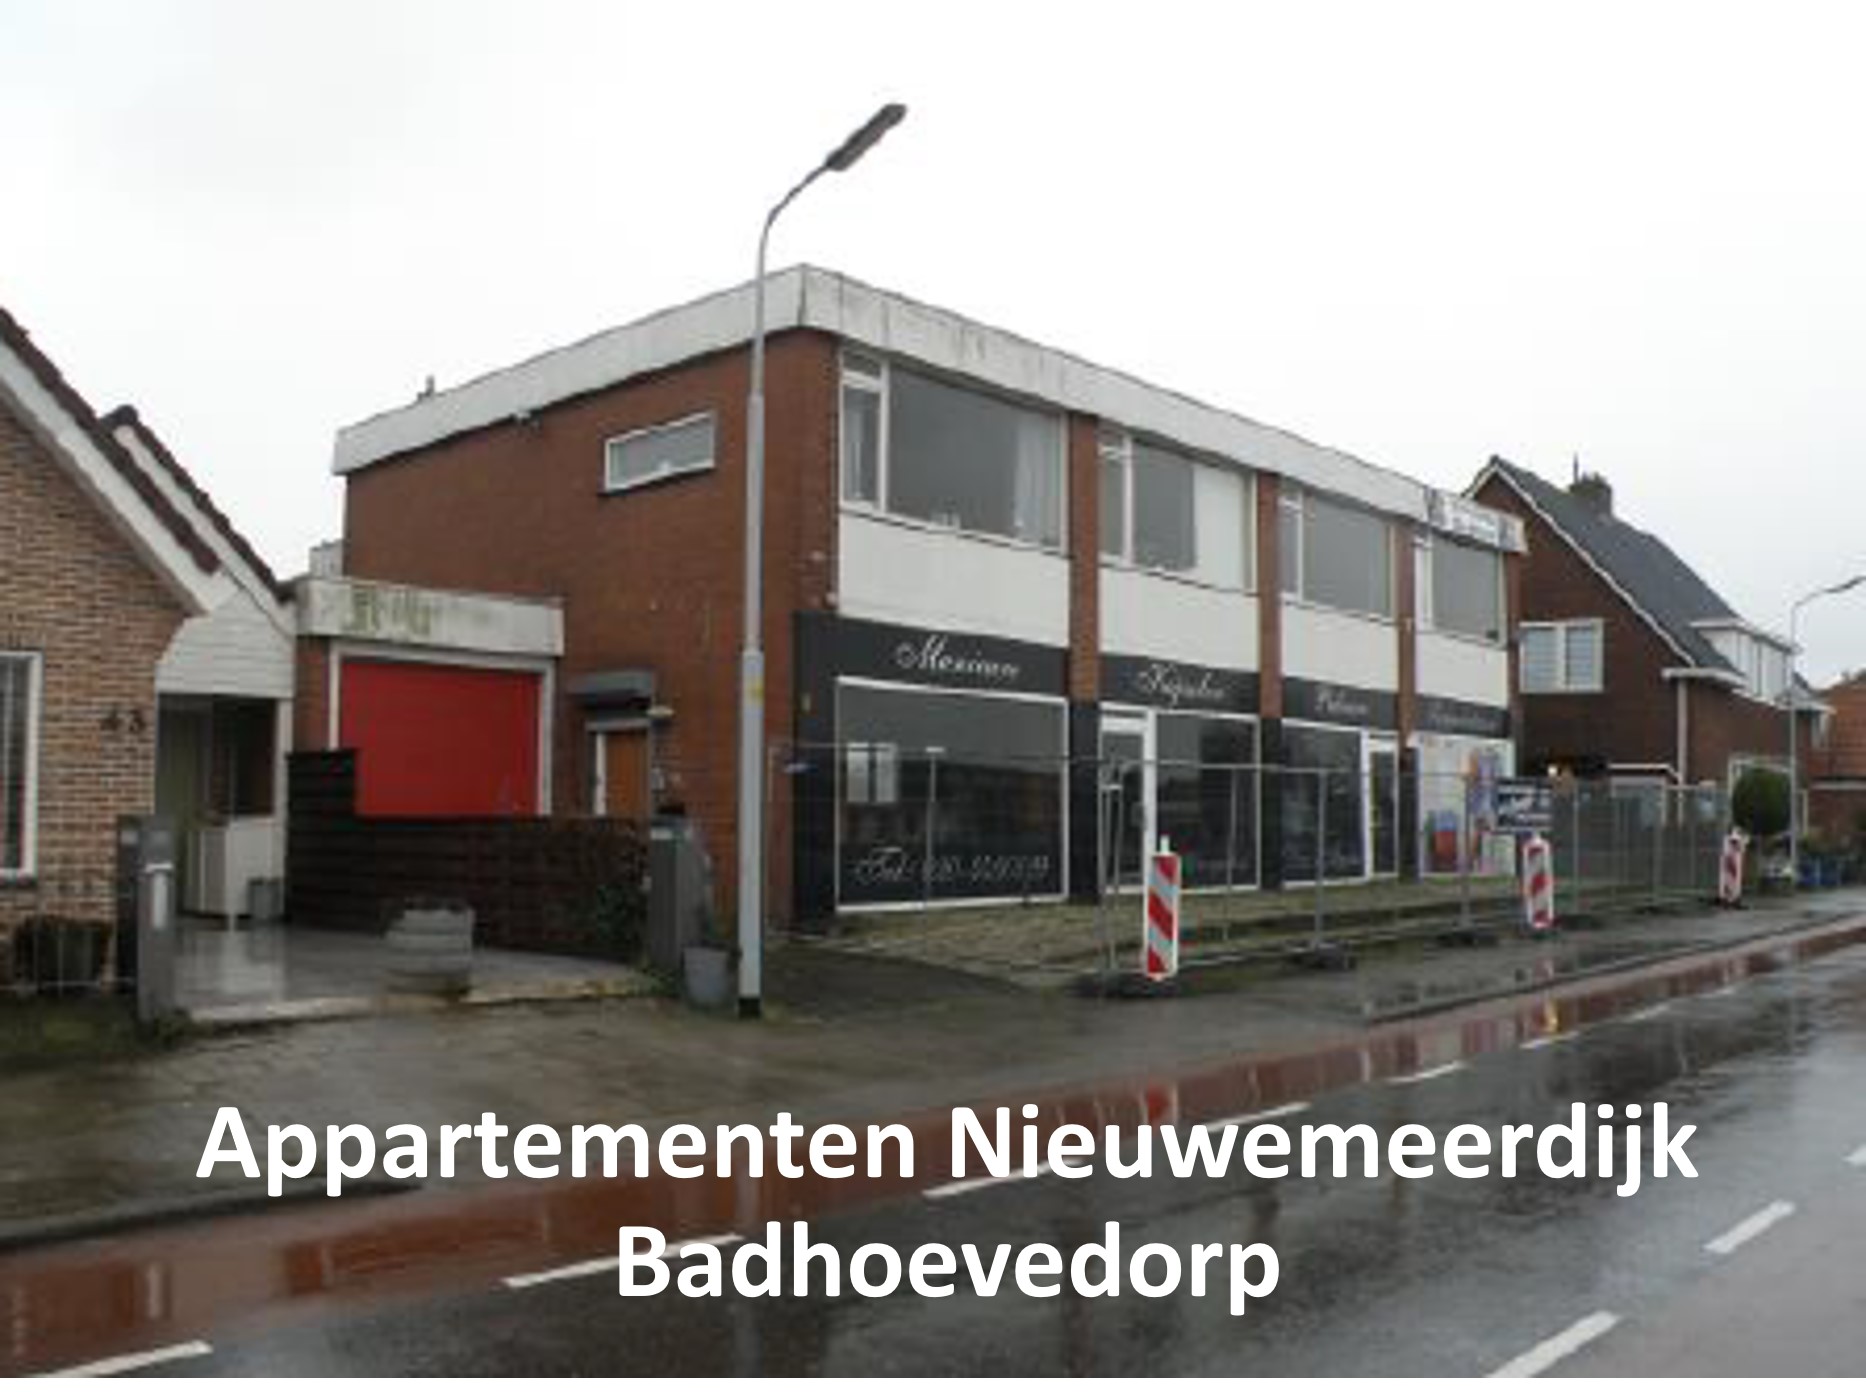 Badhoevedorp - appartementen Nieuwemeerdijk